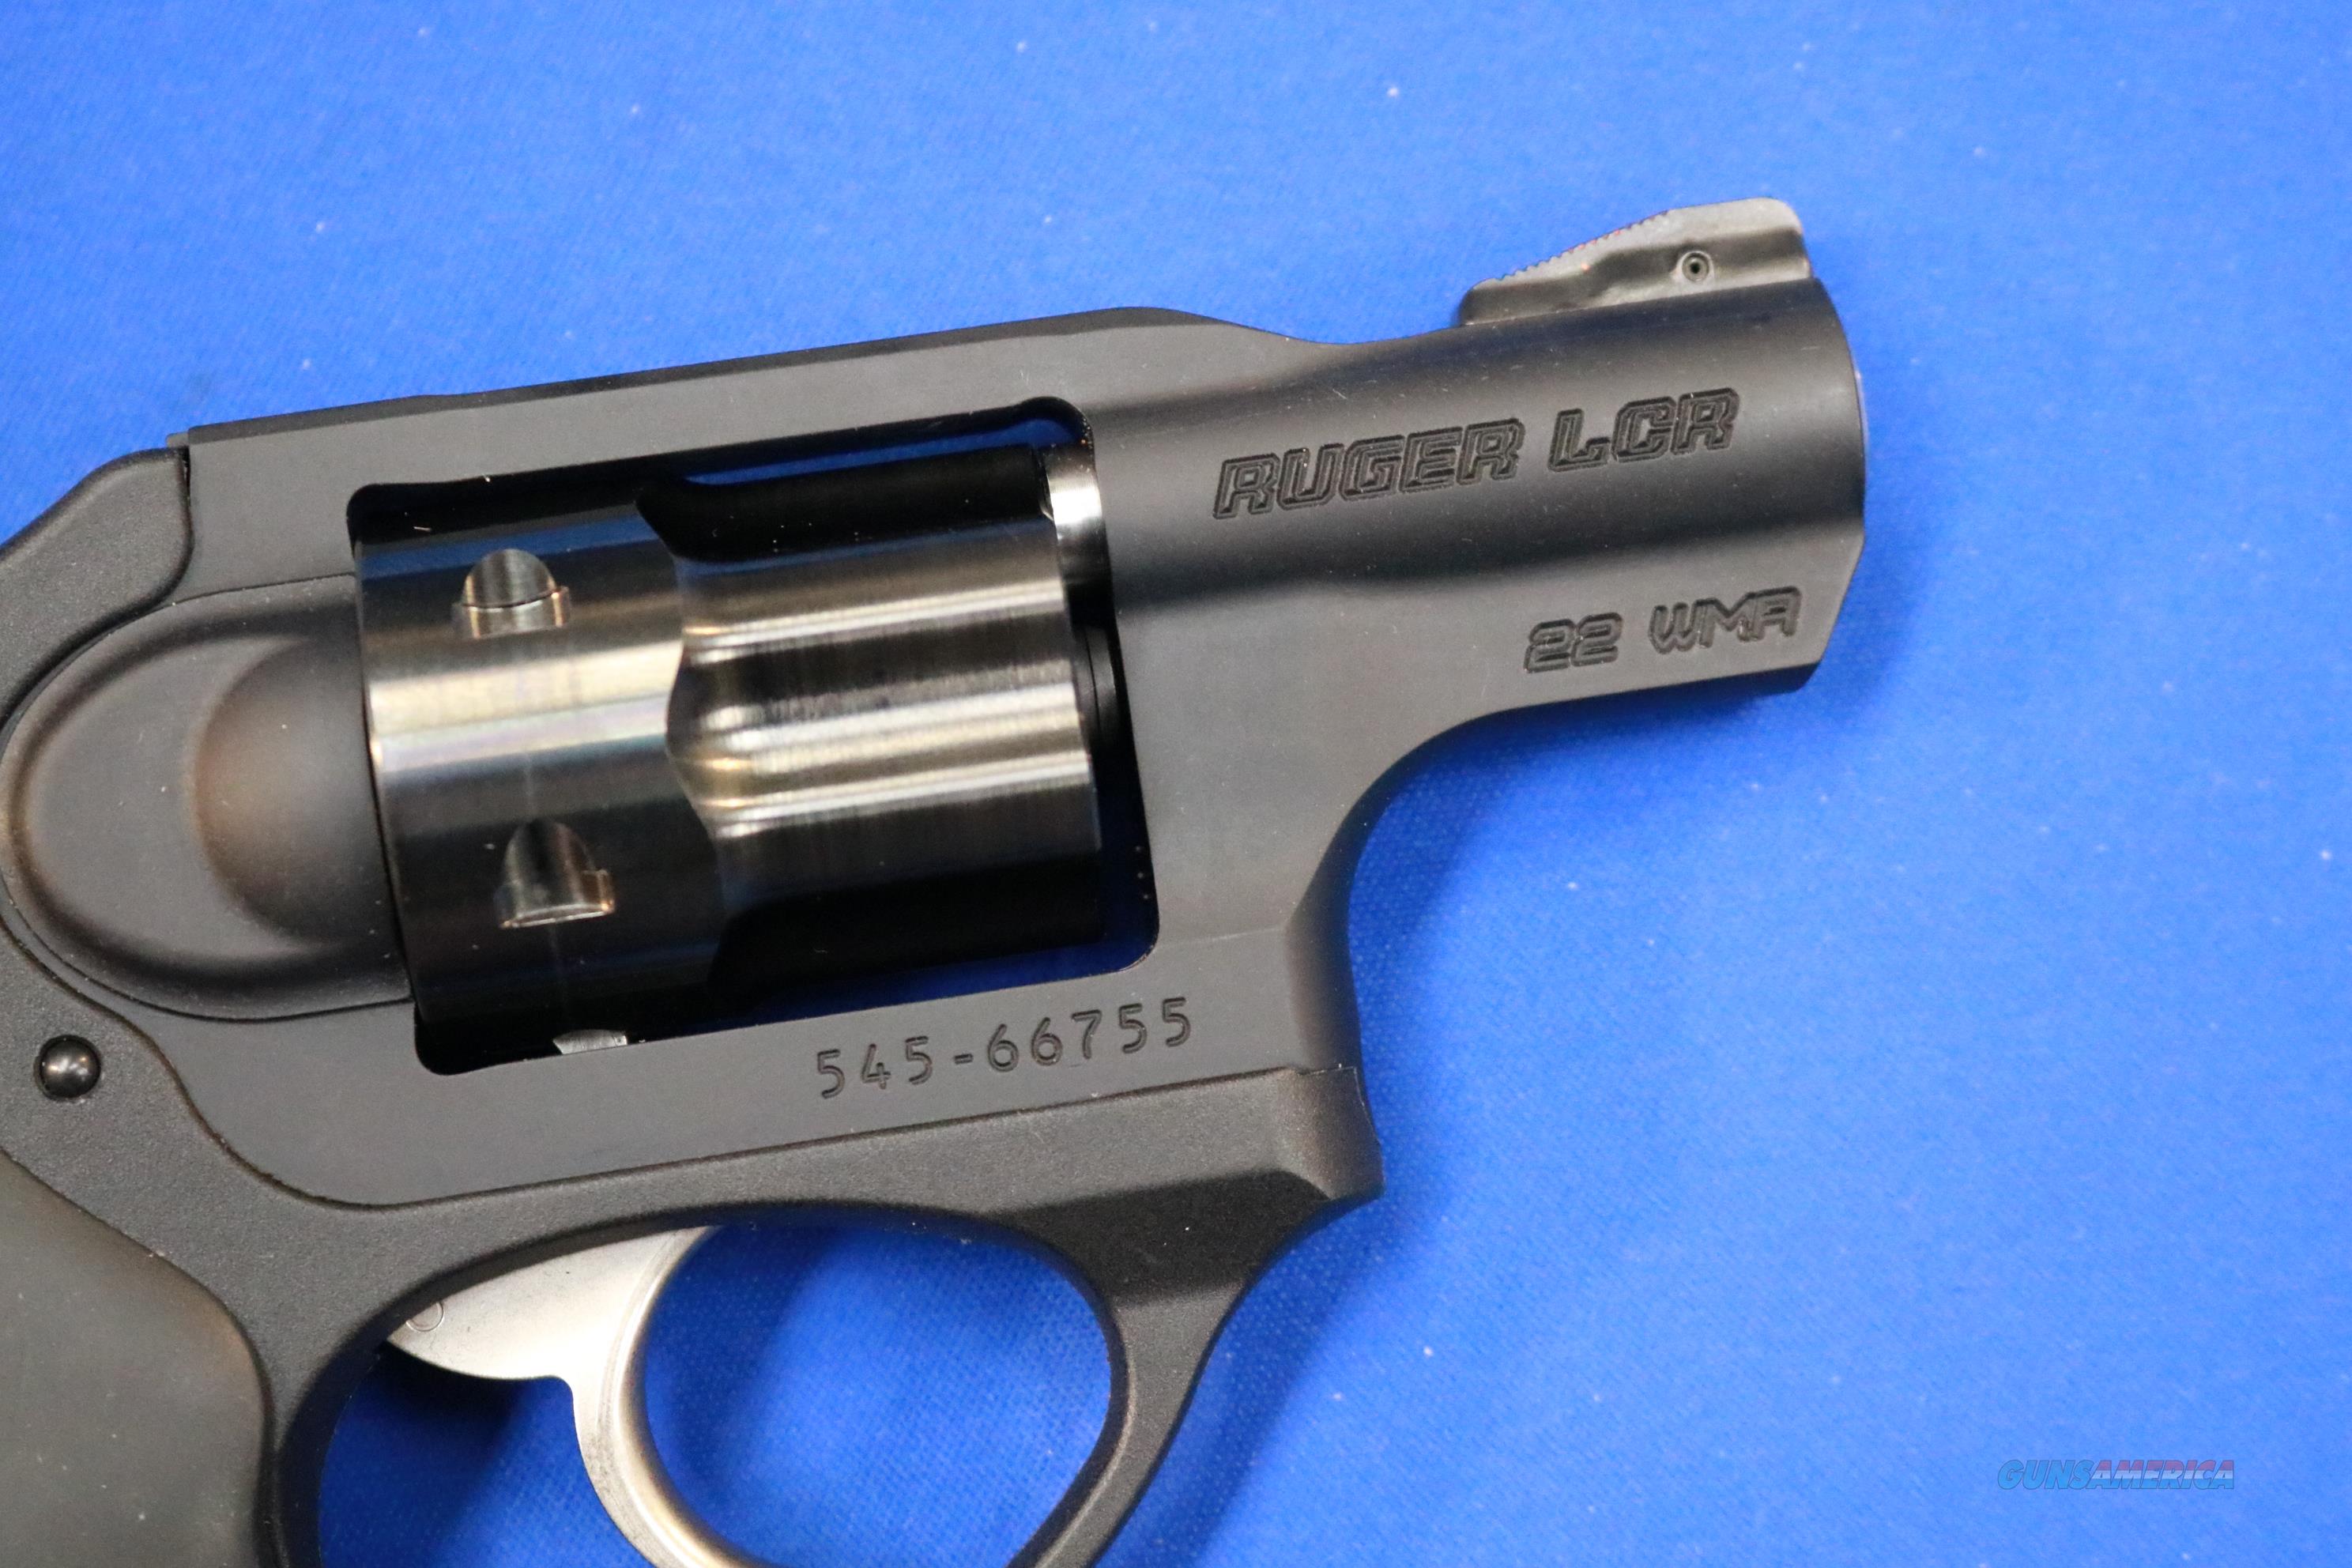 Ruger Lcr 22 Magnum Revolver For Sale At 918473084 8229